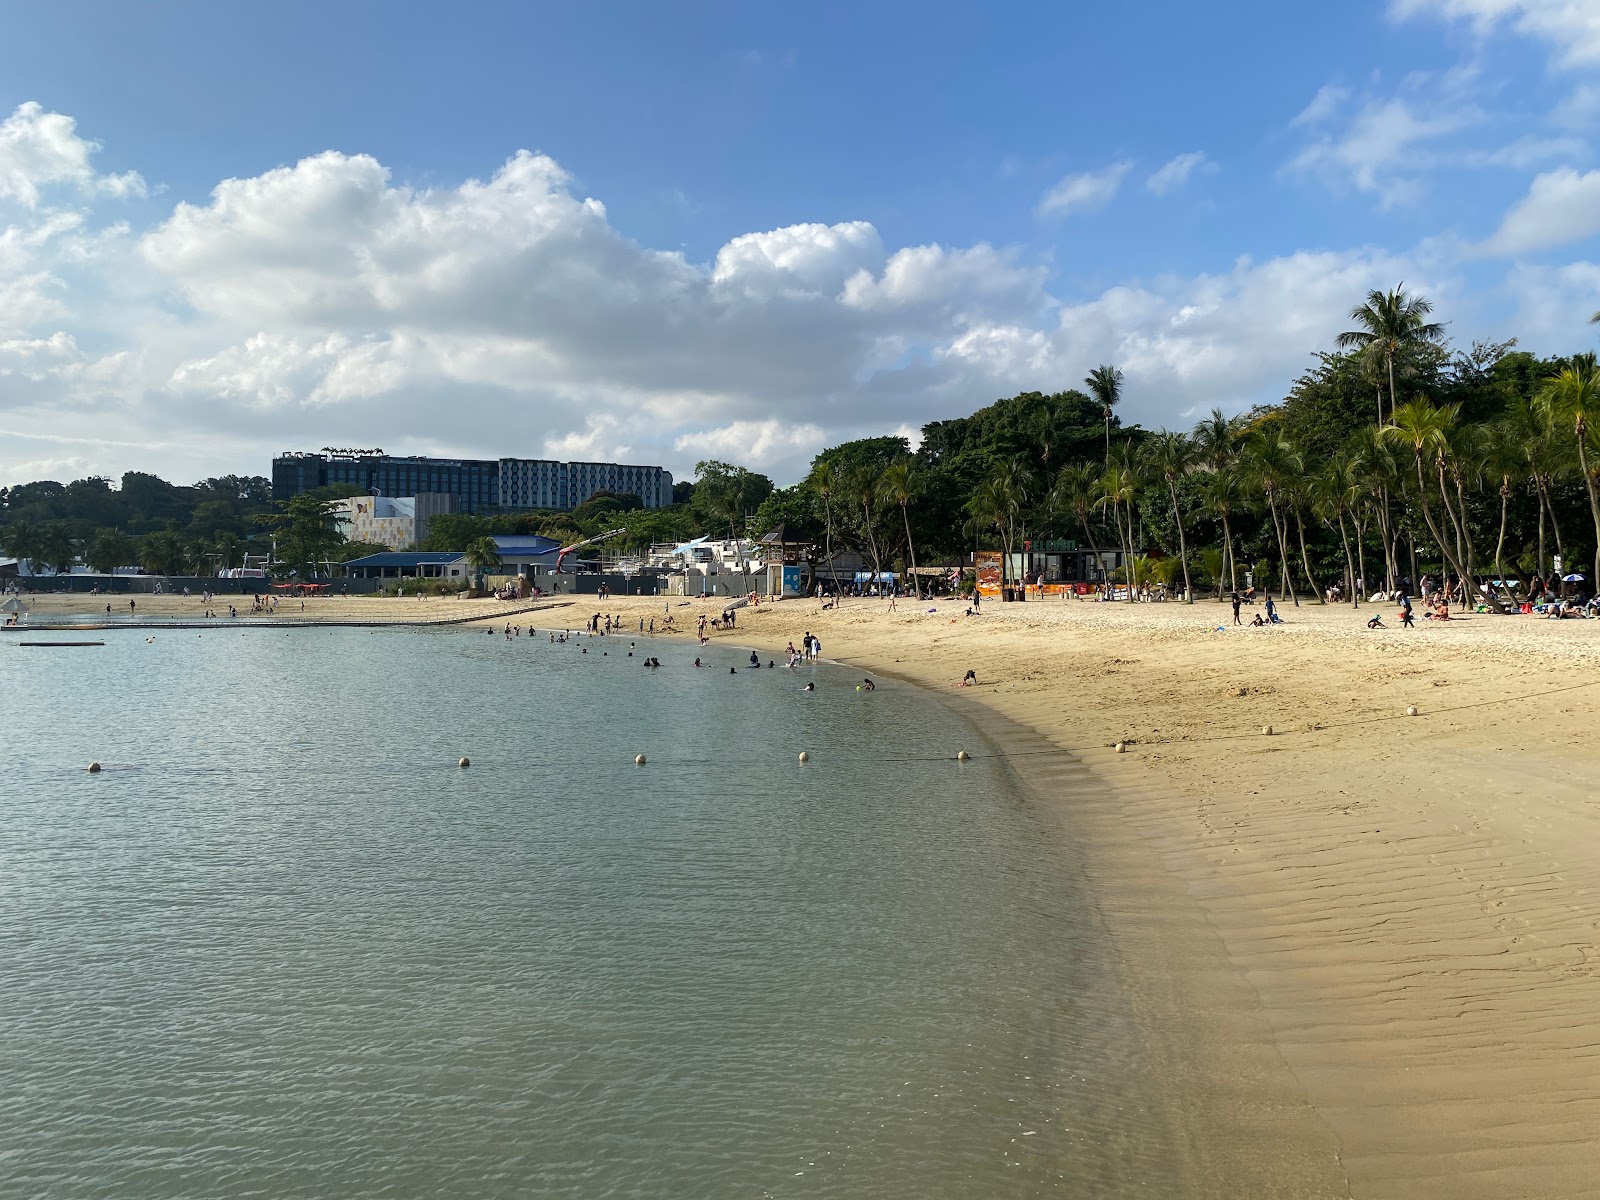 Zdjęcie Palawan Beach - popularne miejsce wśród znawców relaksu